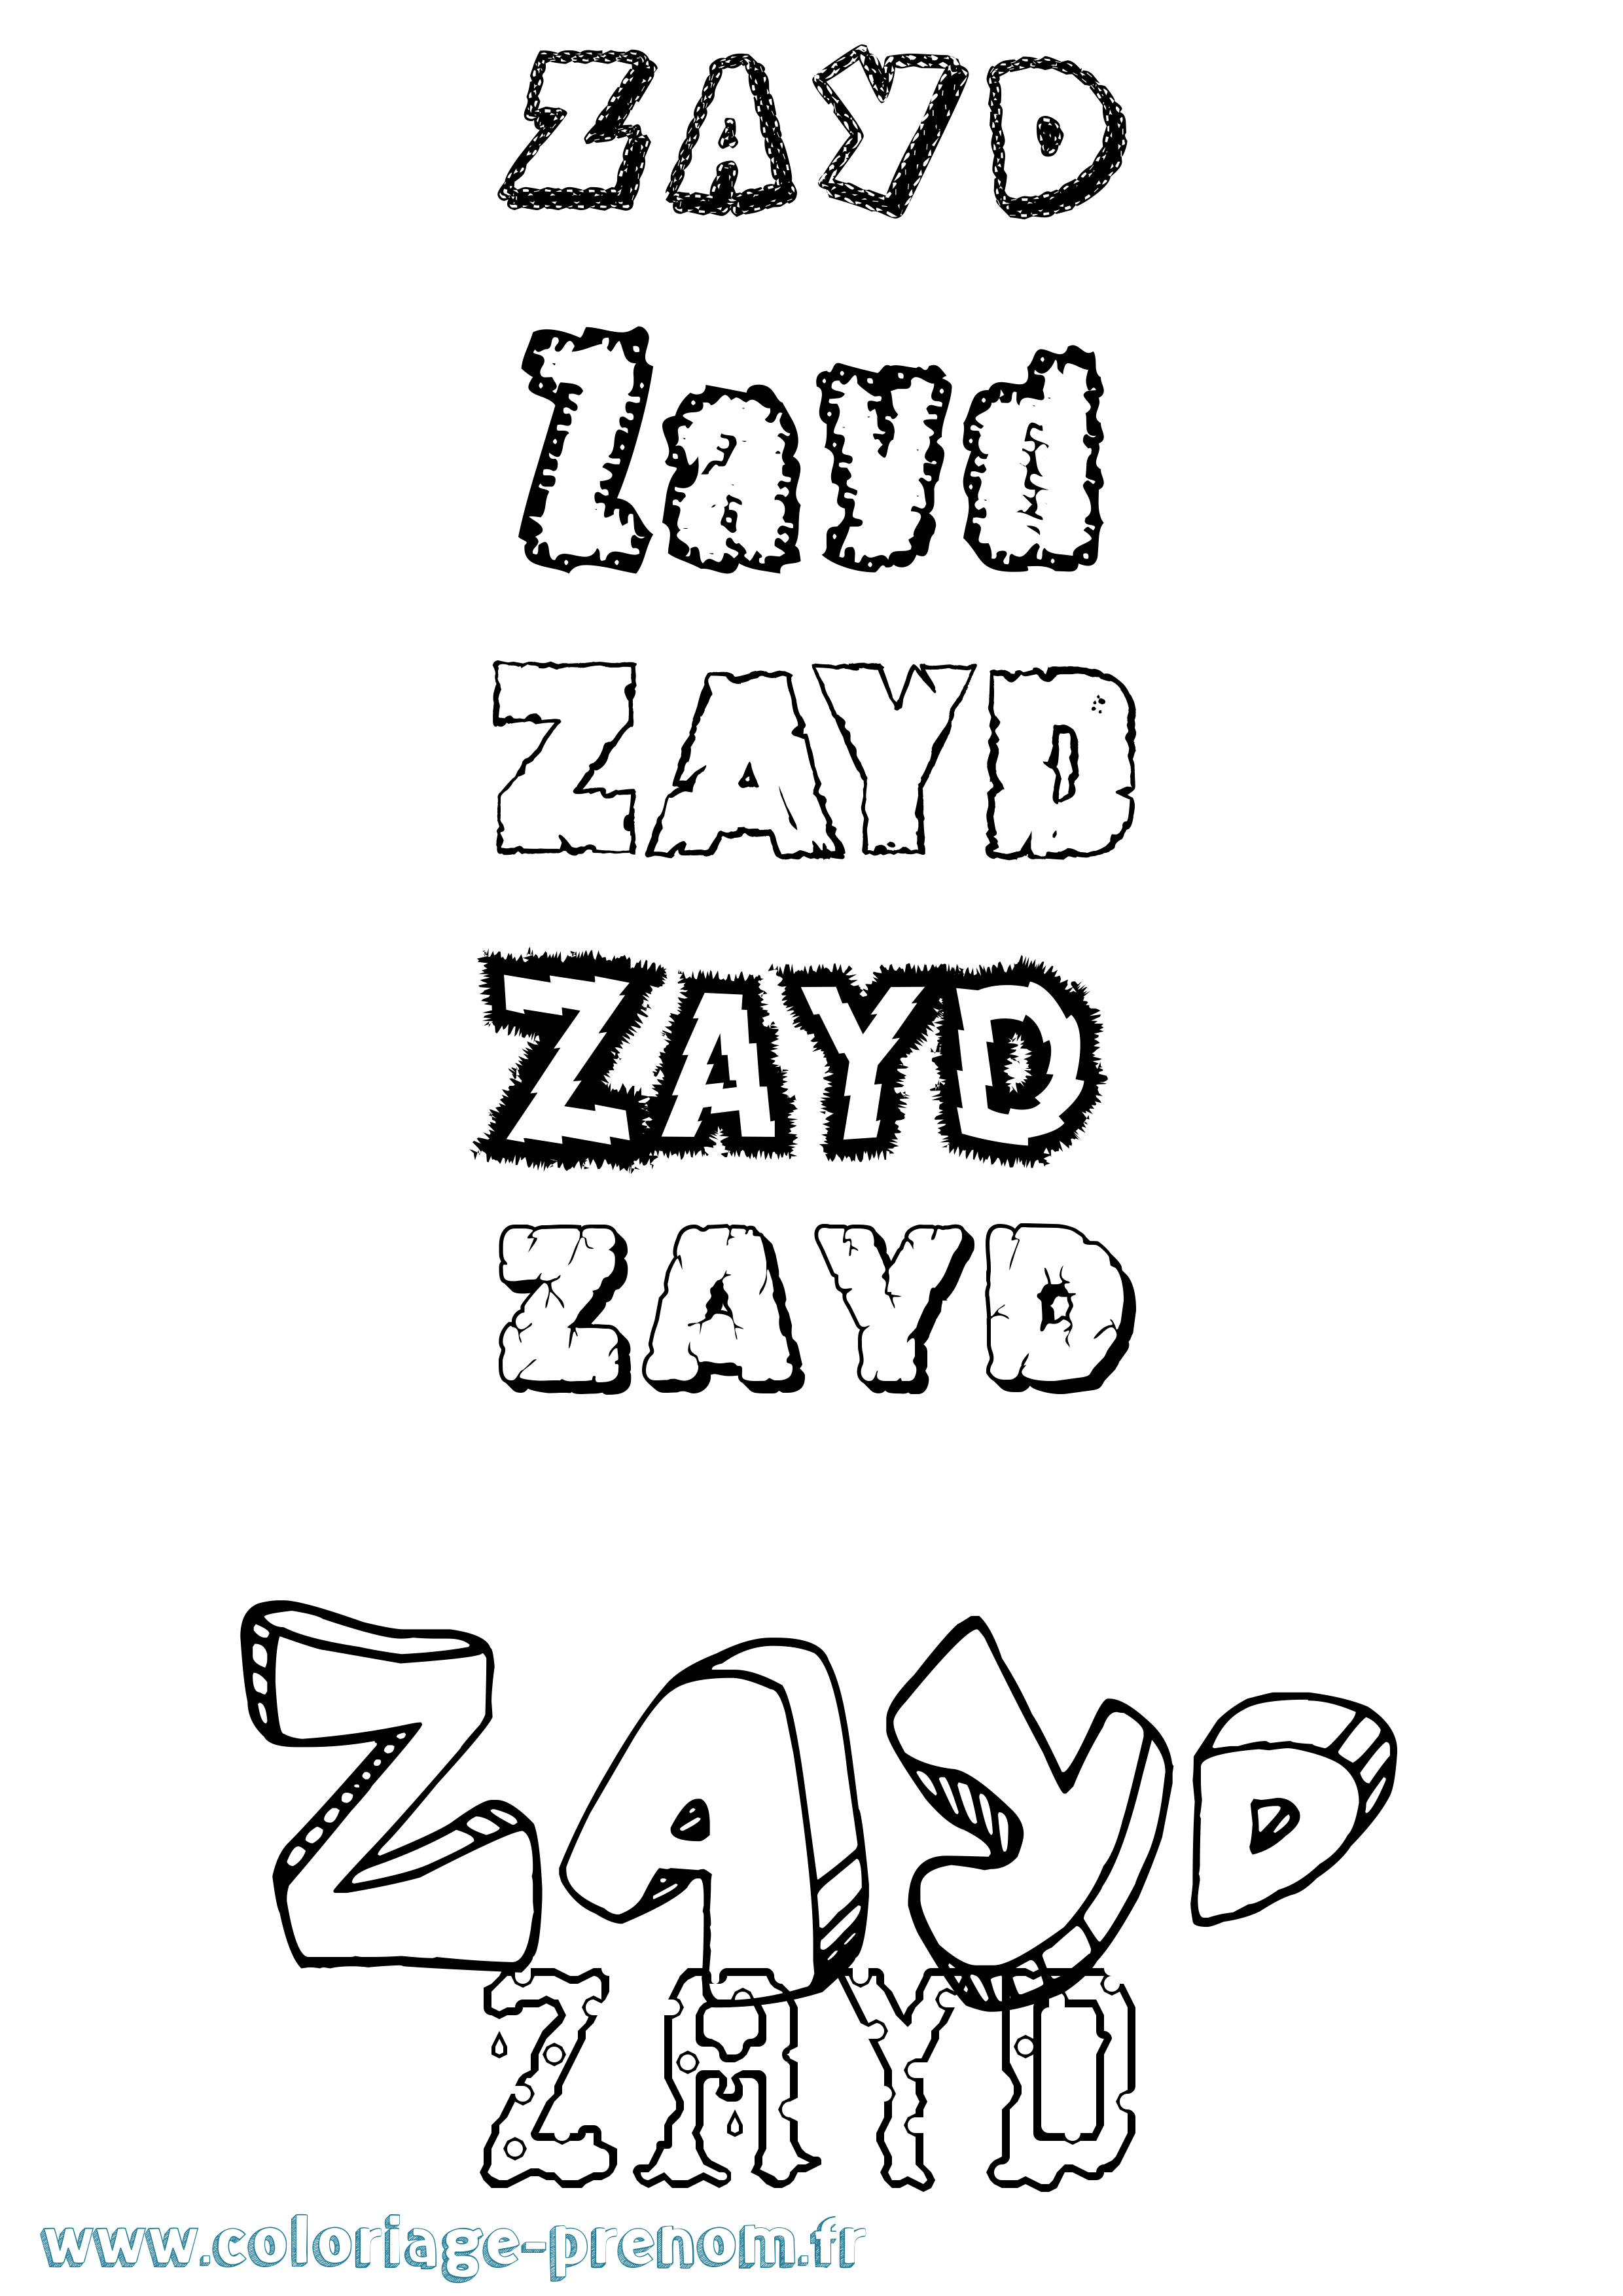 Coloriage prénom Zayd